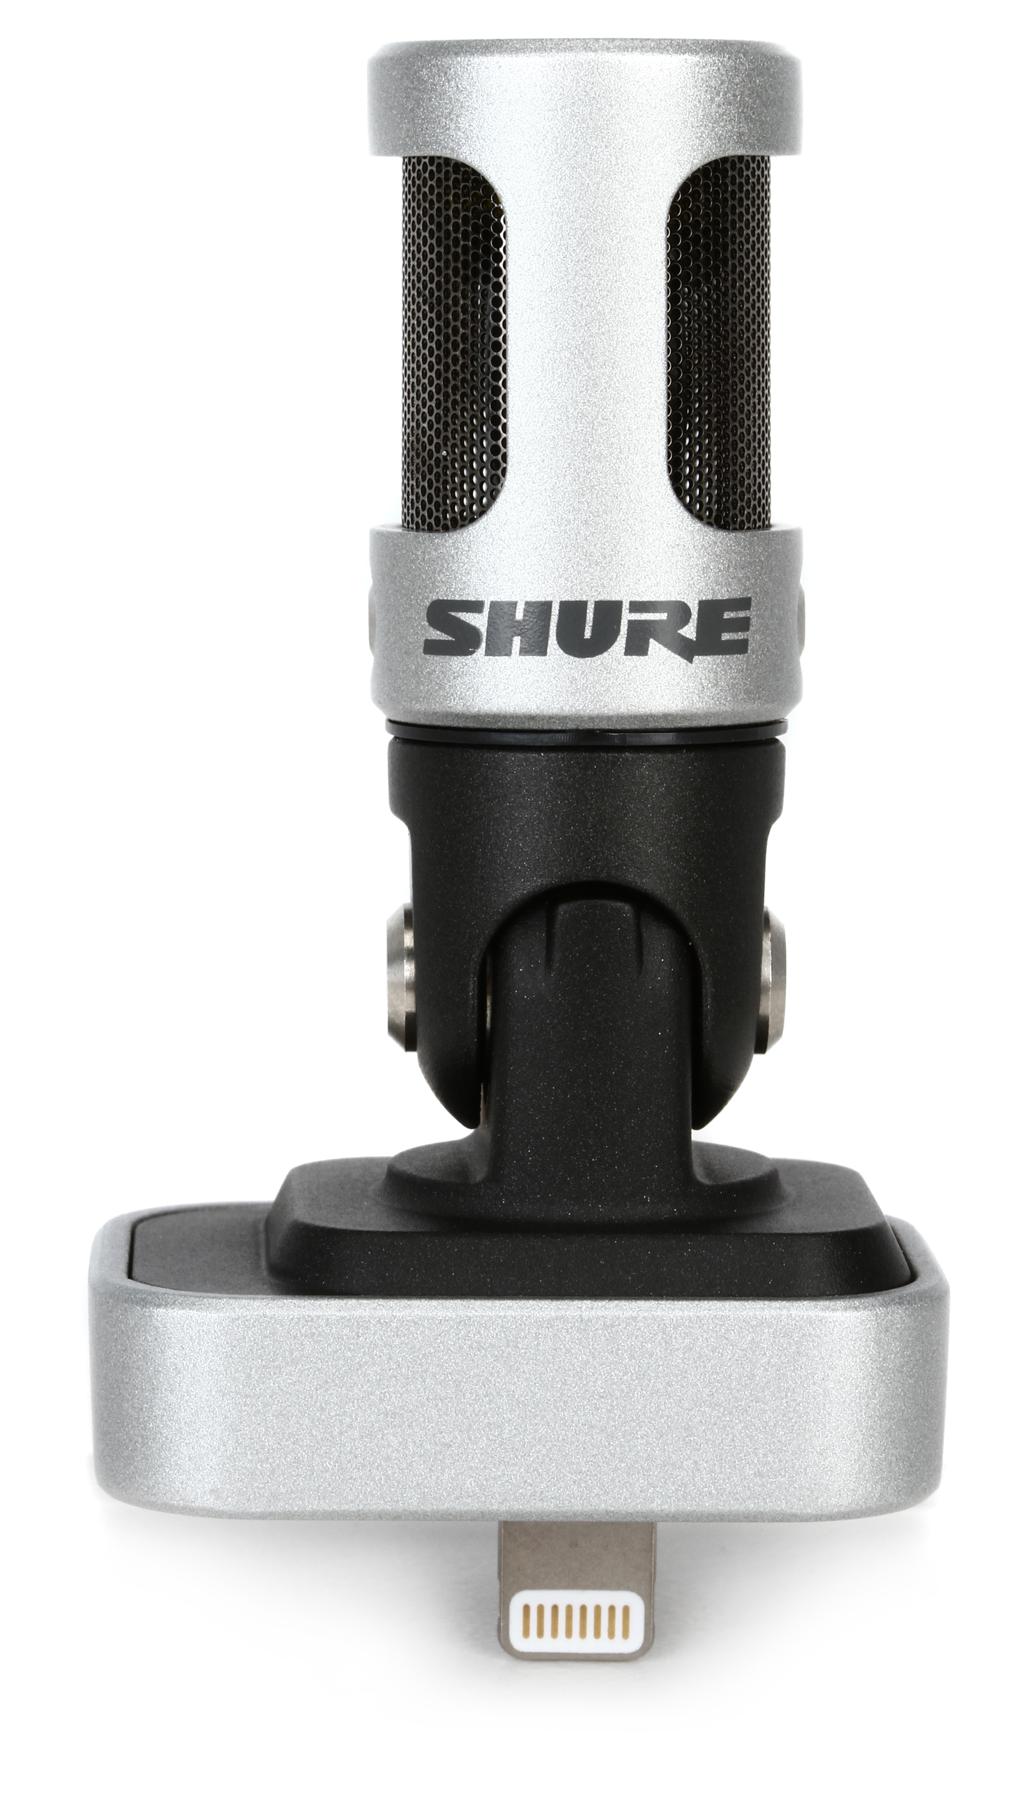 1. Shure MV88 Portable iOS Microphone